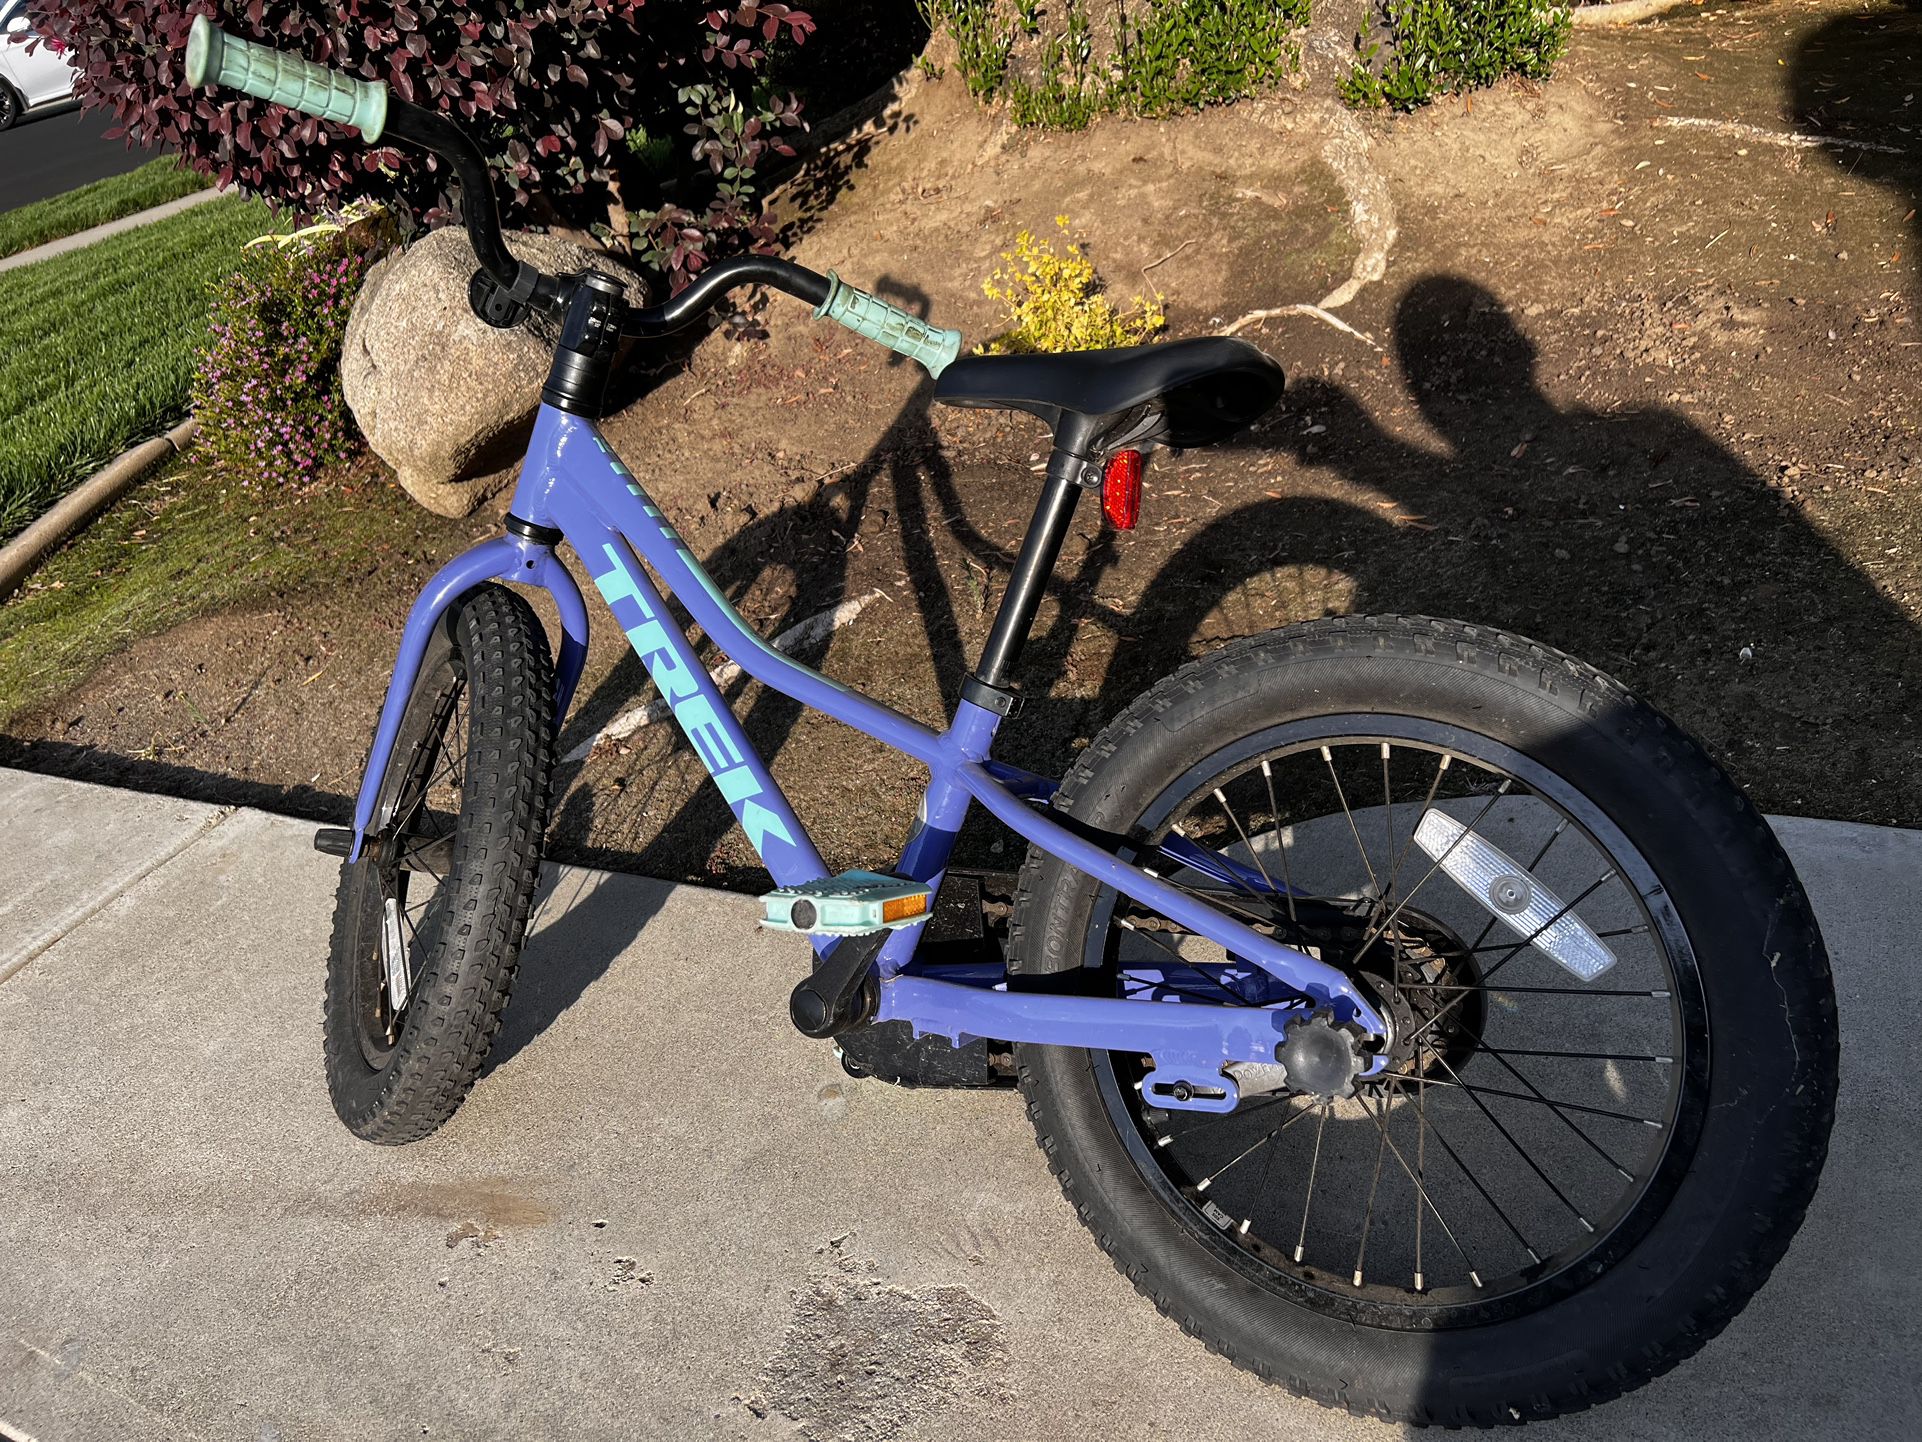 16” Specialized Kids Bike